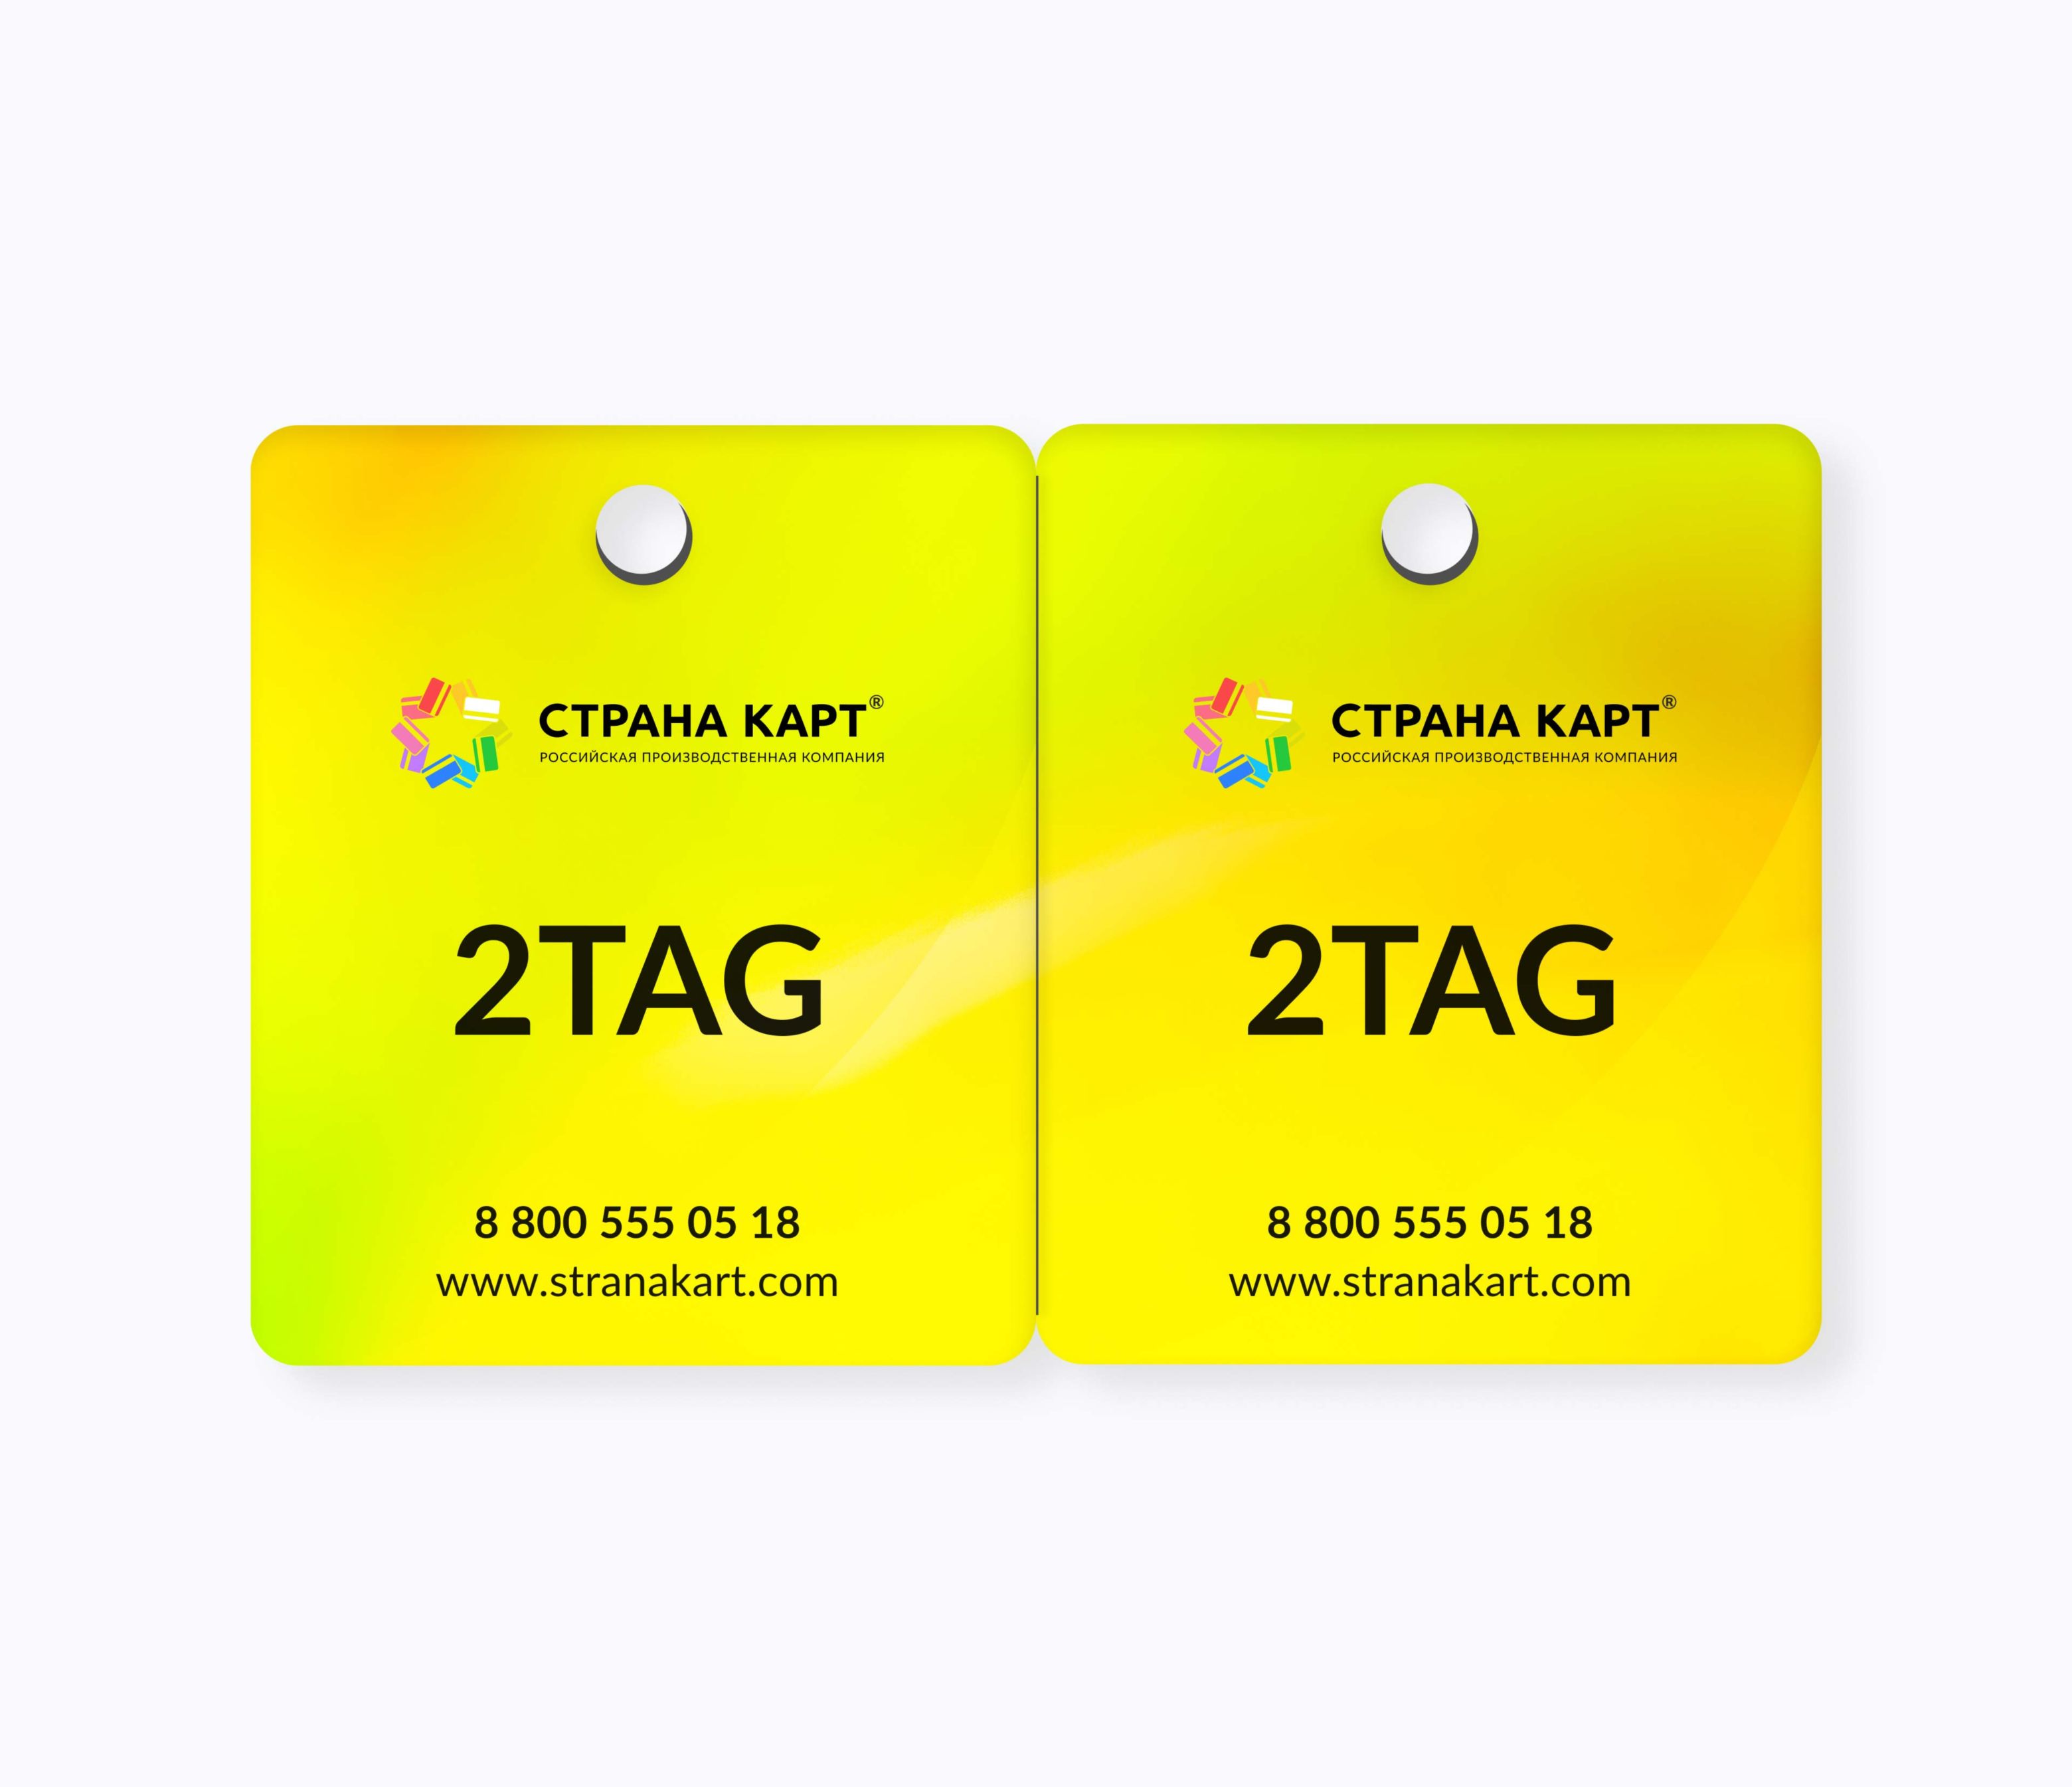 Пластиковые нестандартные карты визитки 2-TAG Пластиковые нестандартные карты визитки